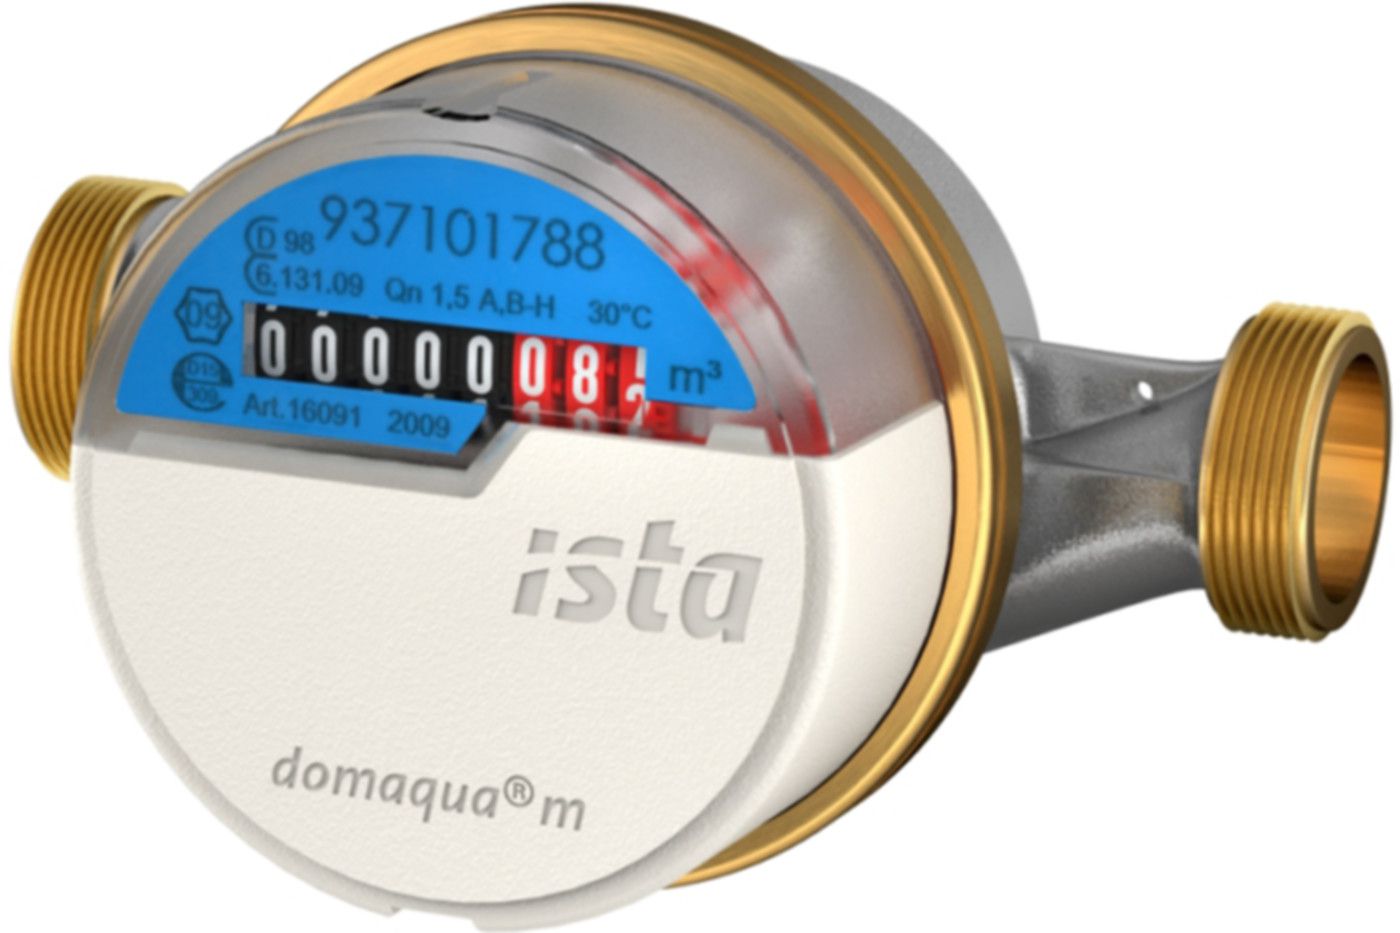 Aufputzzähler Domaqua m DN 15 1/2" G 3/4" - 110 mm kalt 2.5 m3/h  16091 - ISTA - Wärme- / Wasserzähler